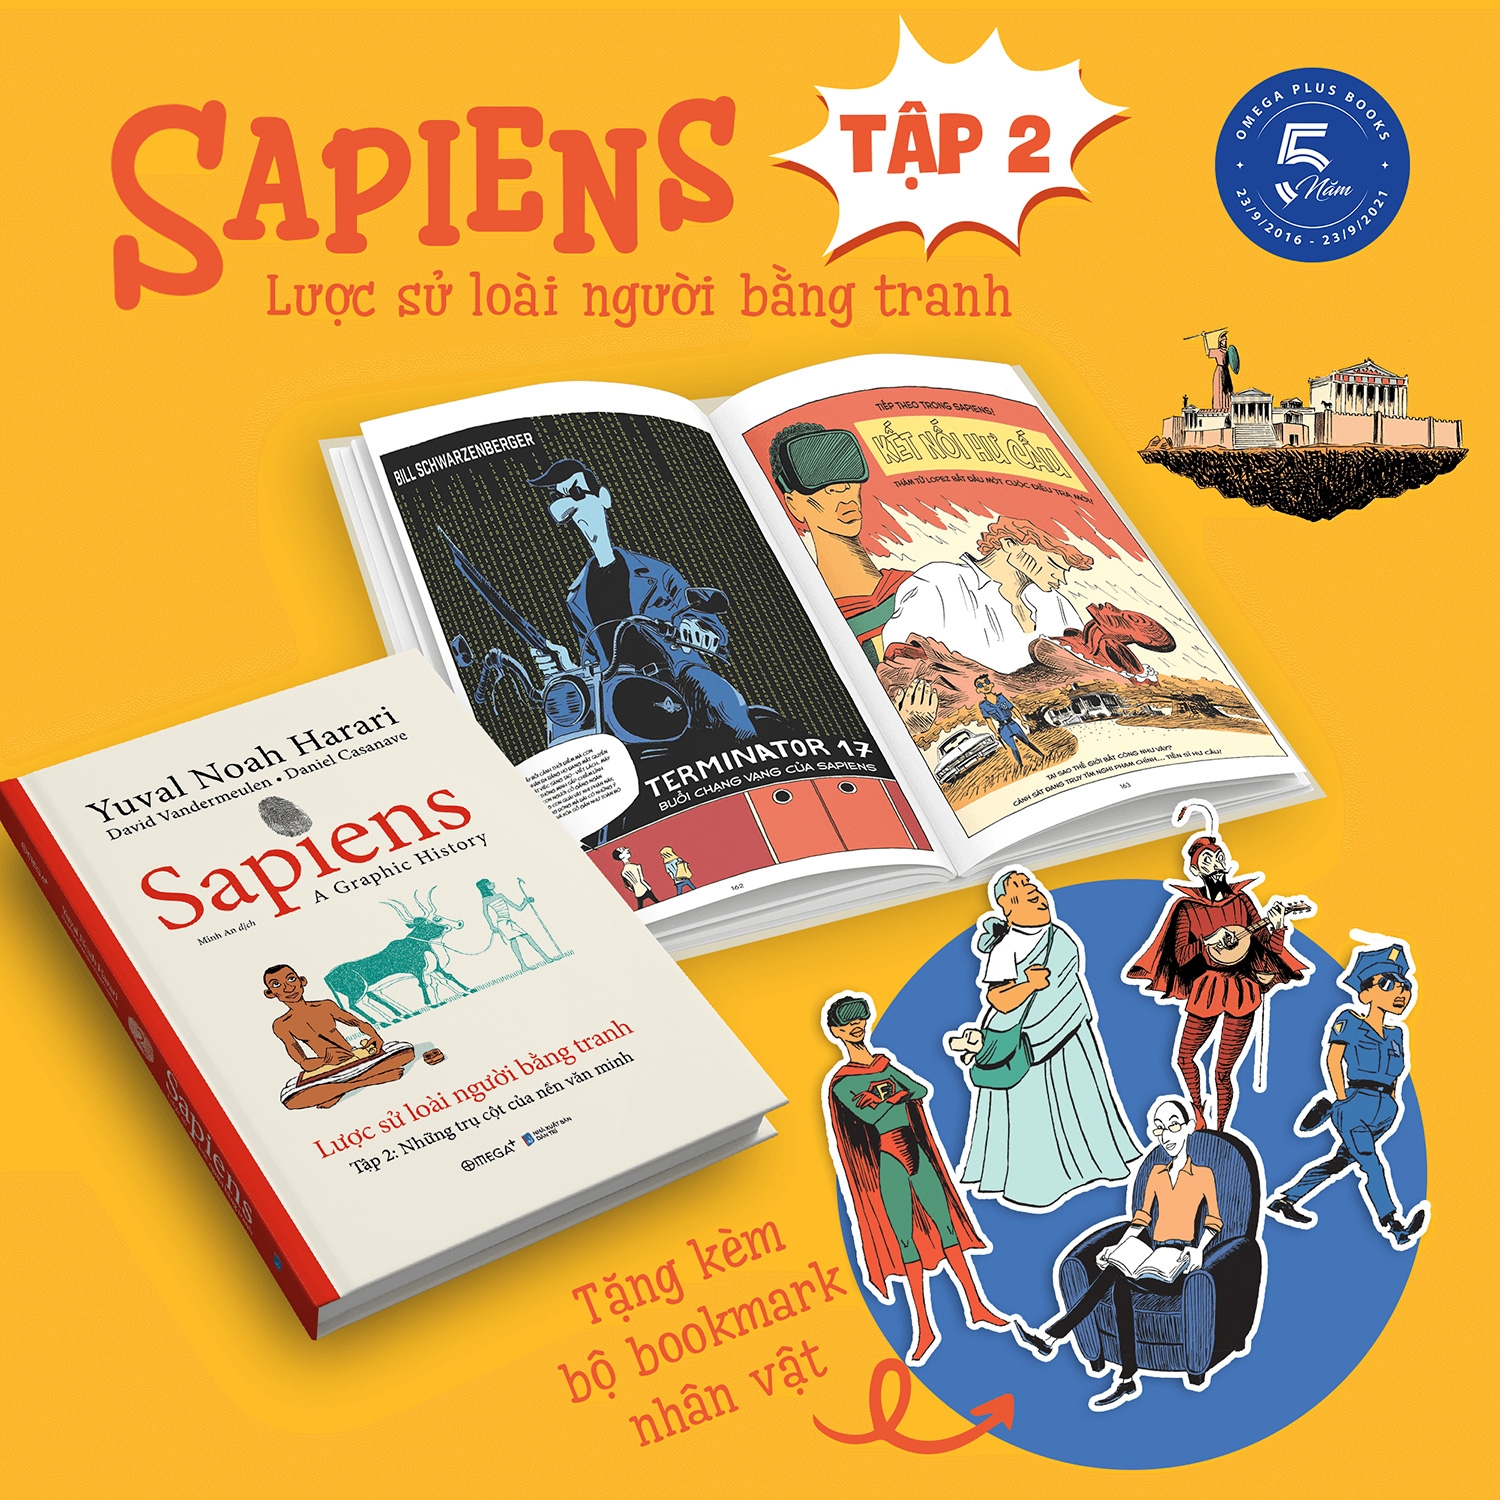 Sapiens - Lược Sử Loài Người Bằng Tranh - Tập 2: Những Trụ Cột Của Nền Văn Minh PDF